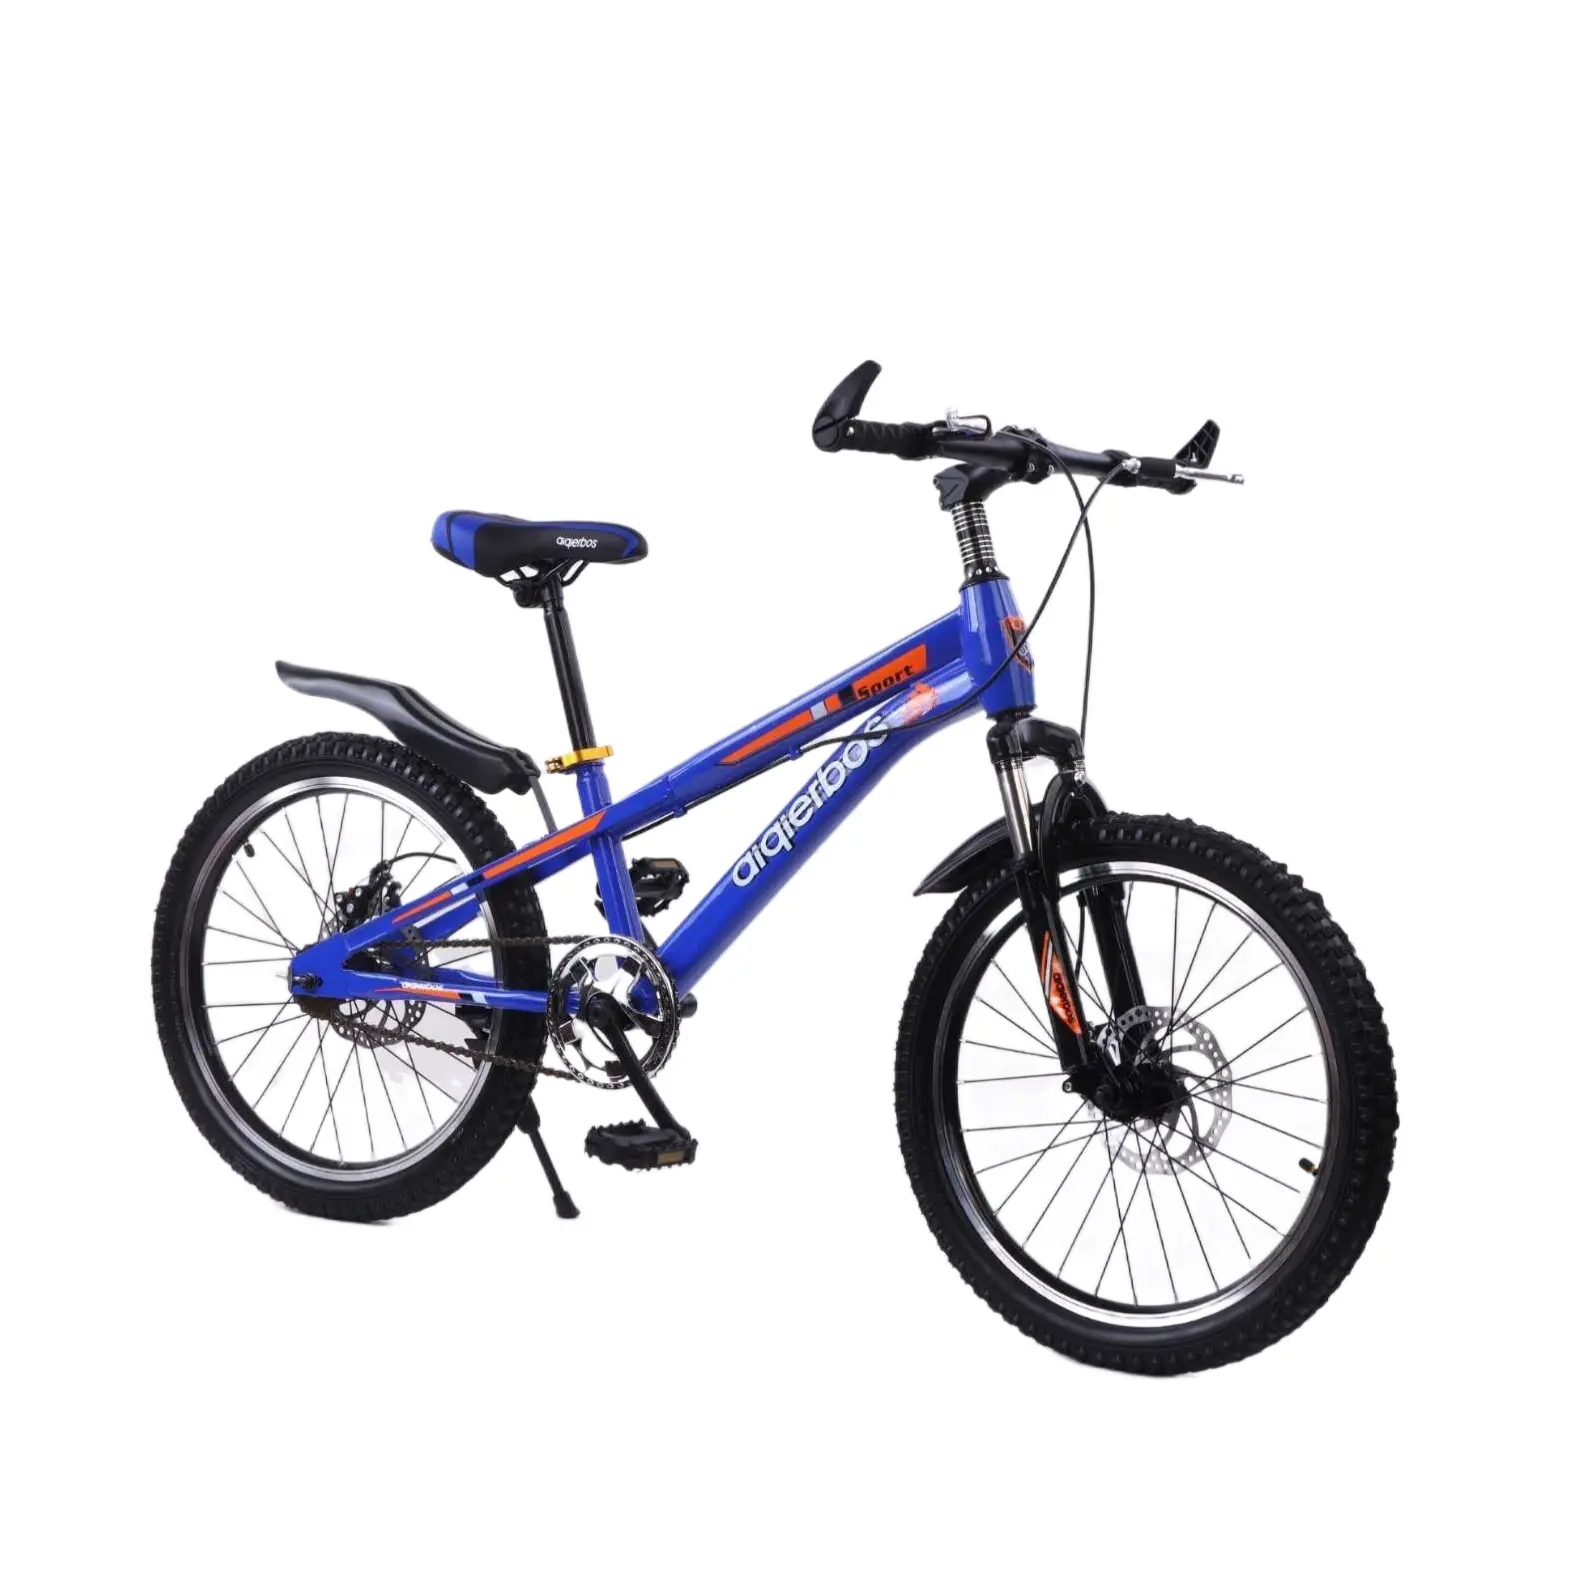 Bicicleta para niños de 16 pulgadas, estilo bonito para niñas de 10 años, ligera, de alta calidad